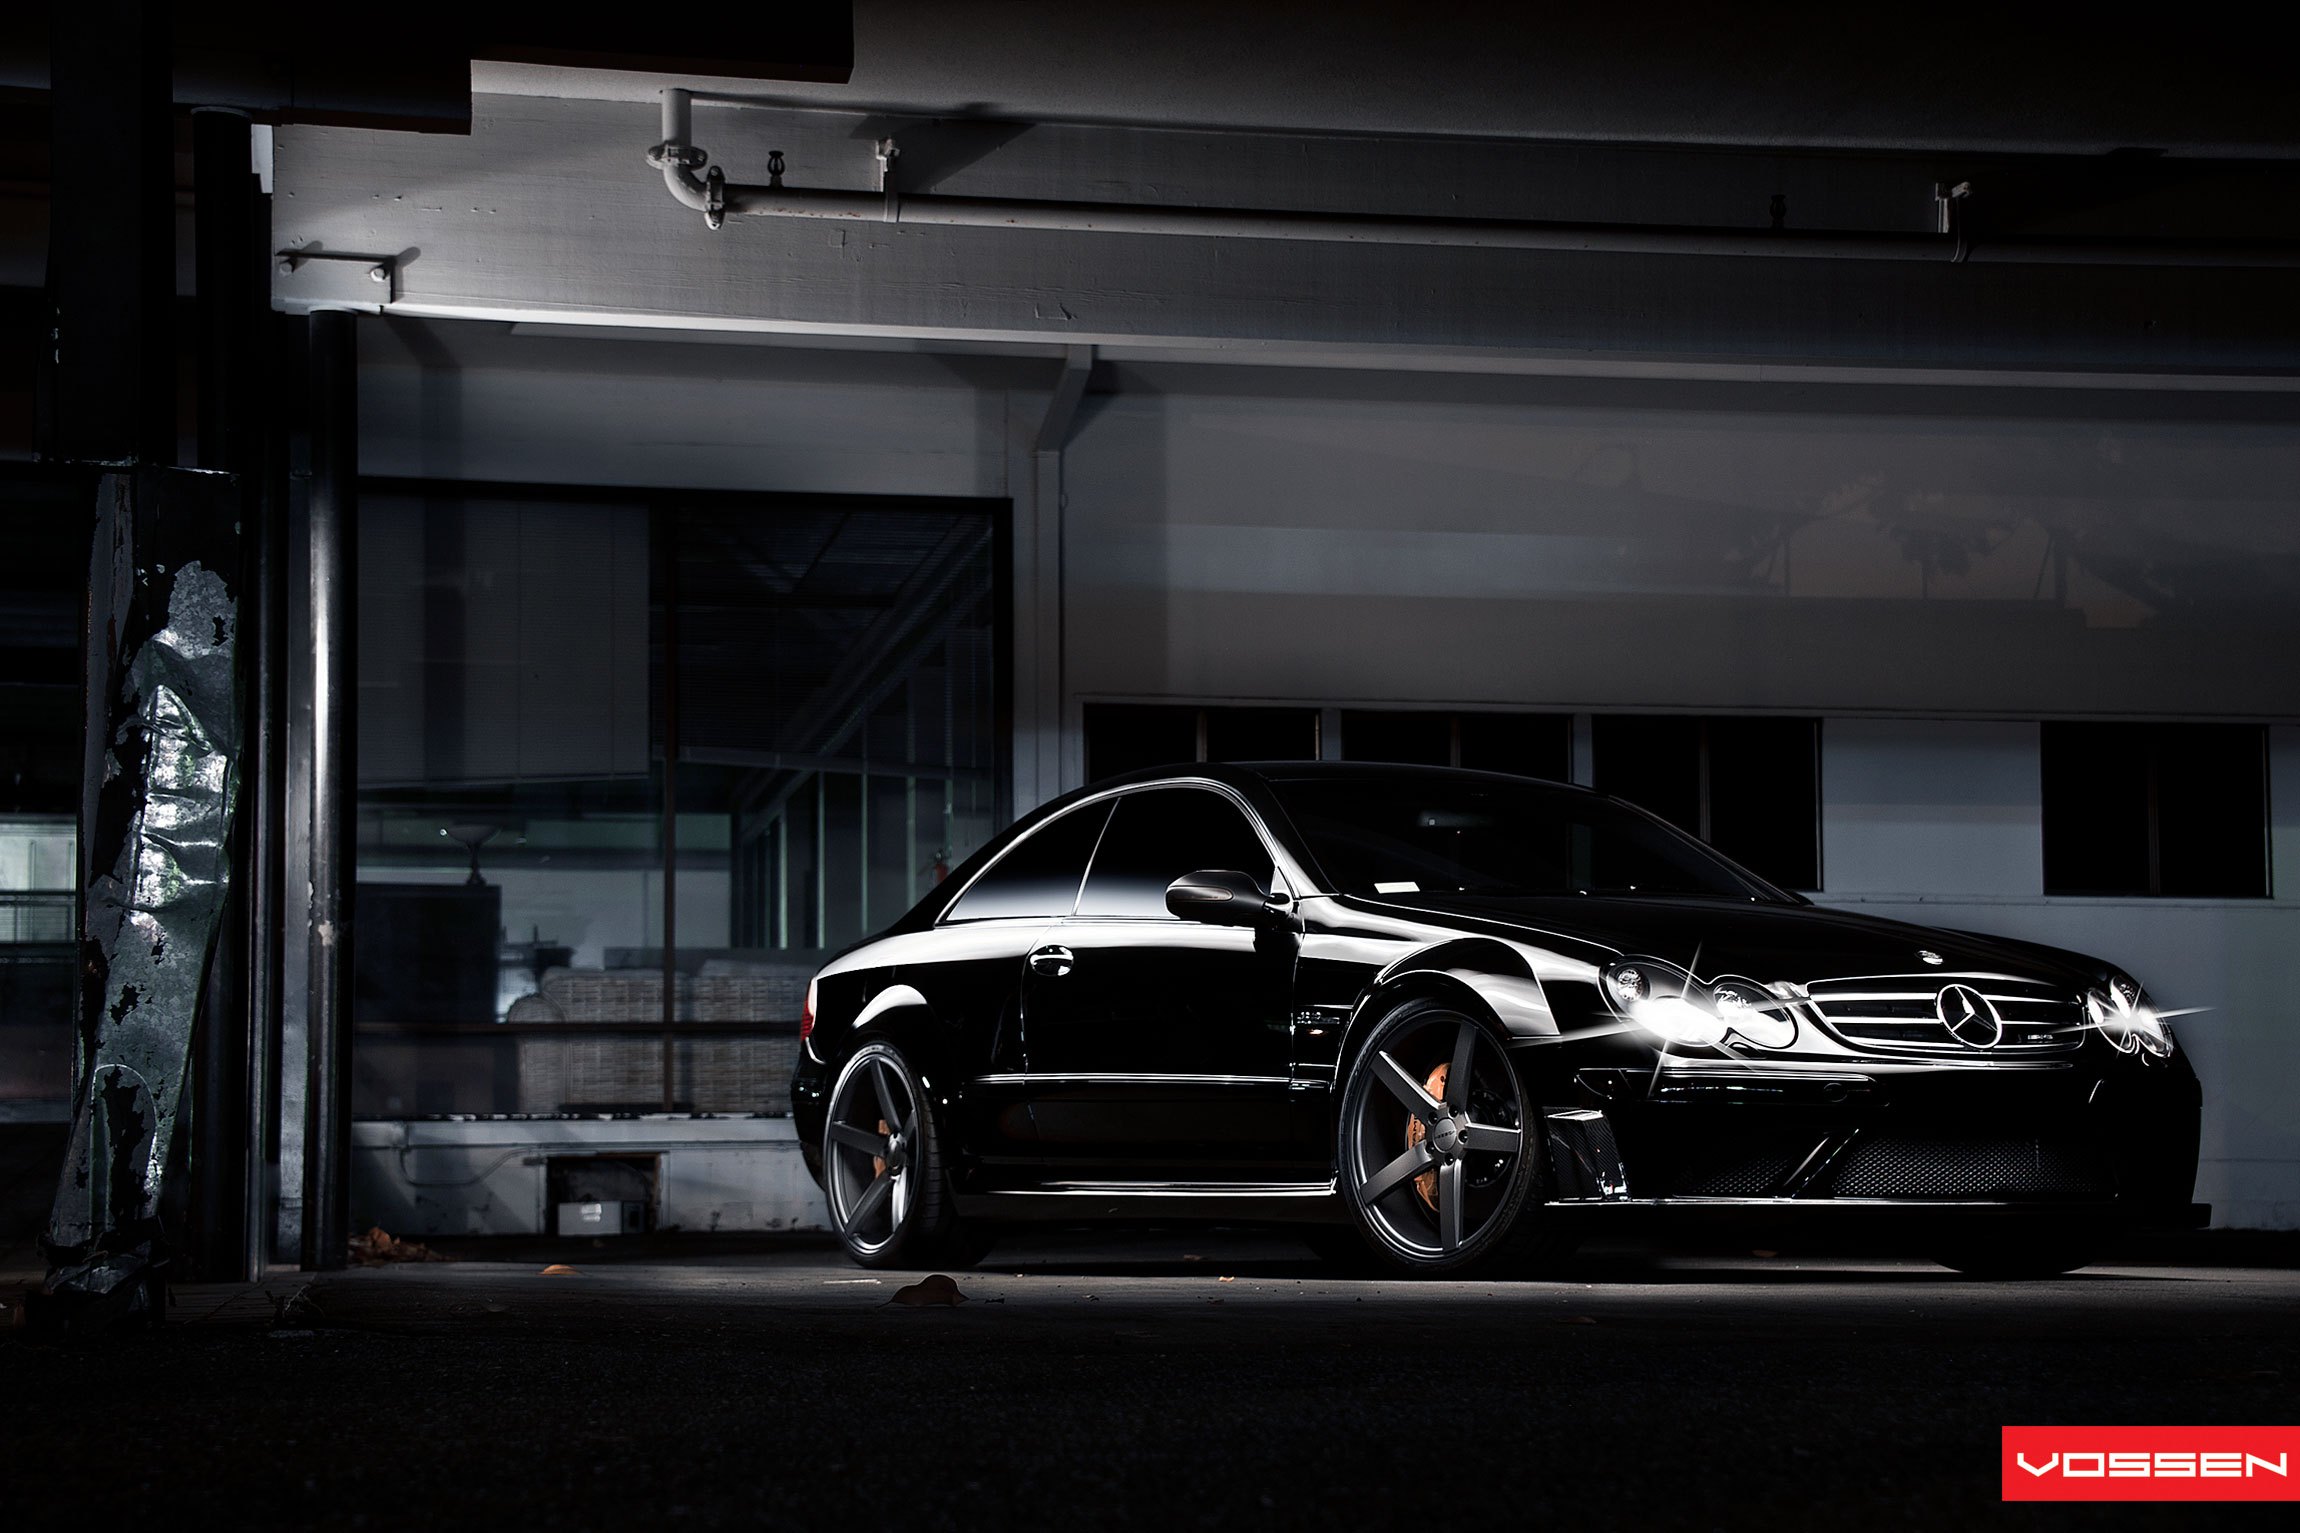 Custom Black Mercedes CLK with Vossen Rims - Photo by Vossen